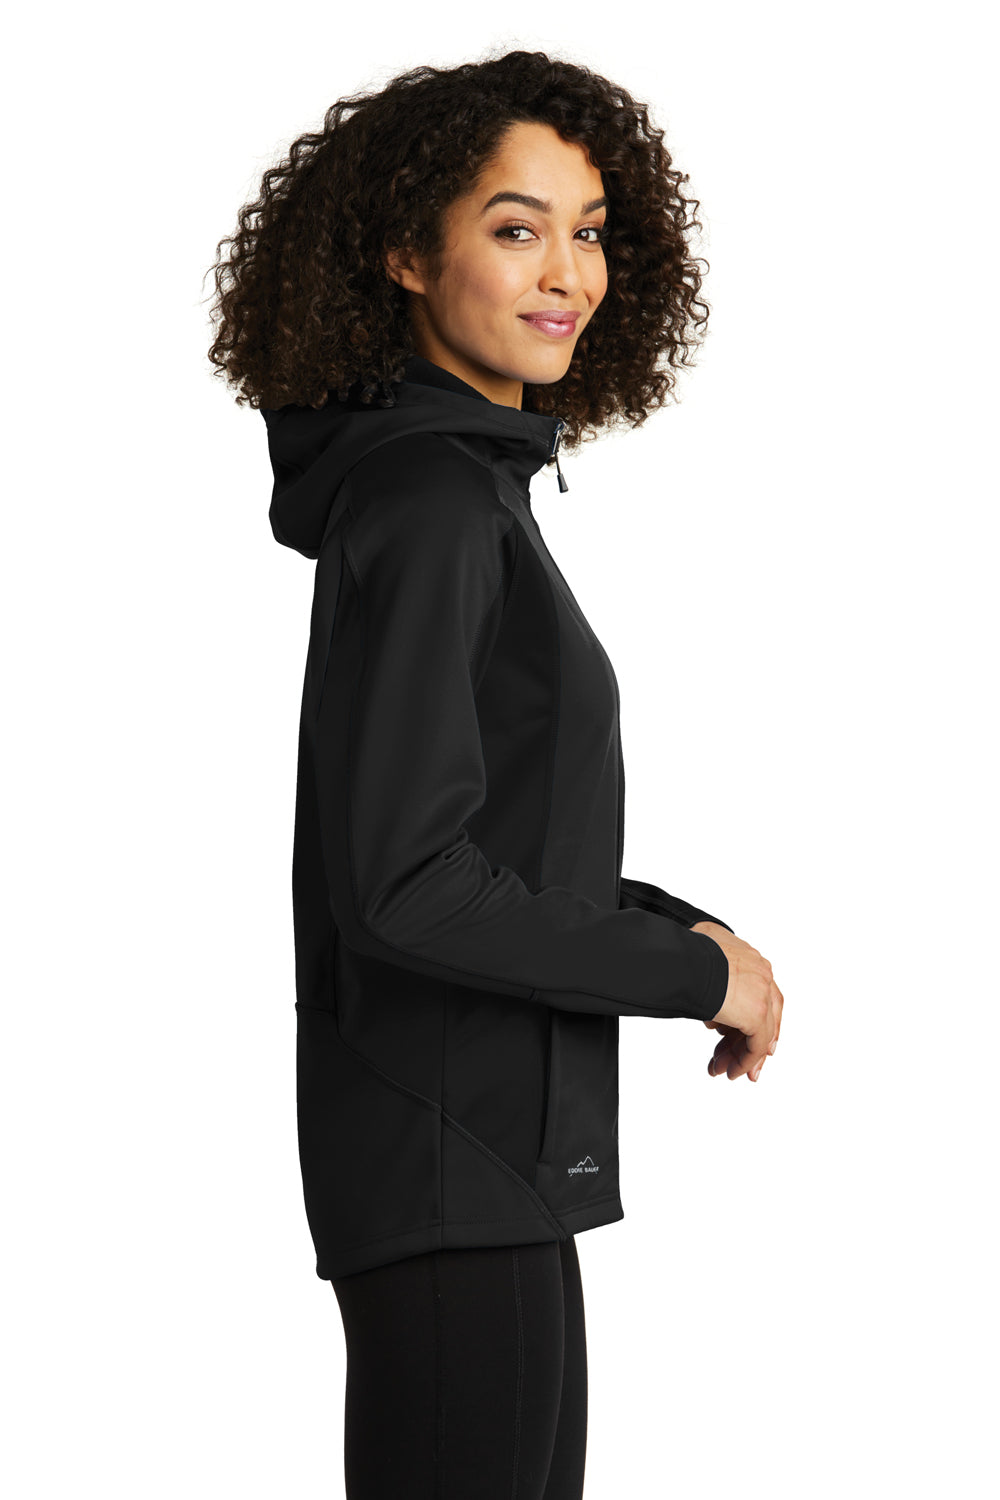 Eddie Bauer EB543 Womens Trail Water Resistant Full Zip Hooded Jacket Black Model Side